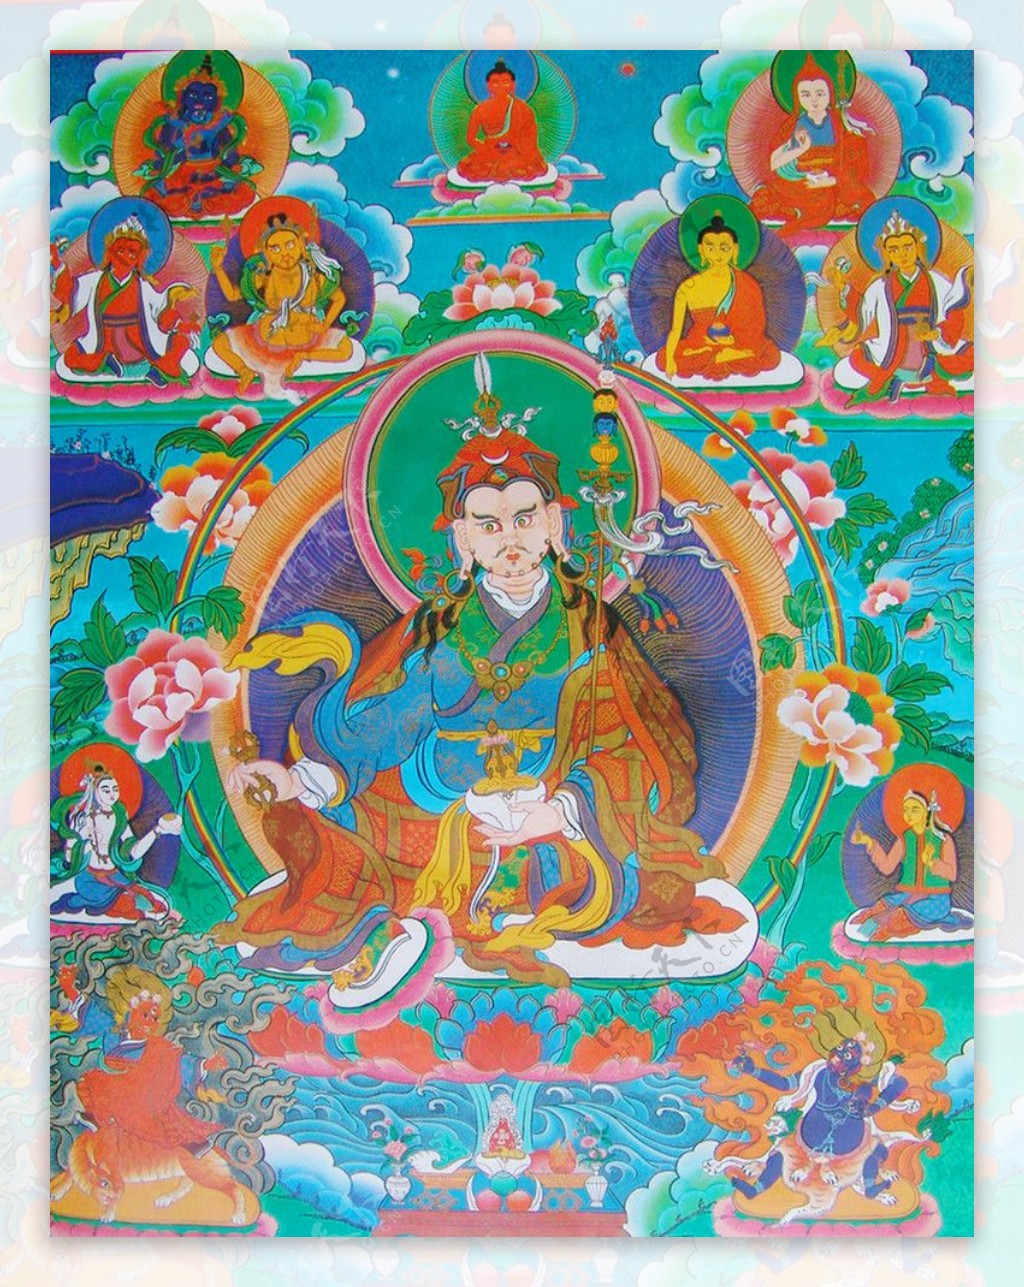 西藏日喀则唐卡佛教佛法佛经佛龛唐卡全大藏族文化08图片